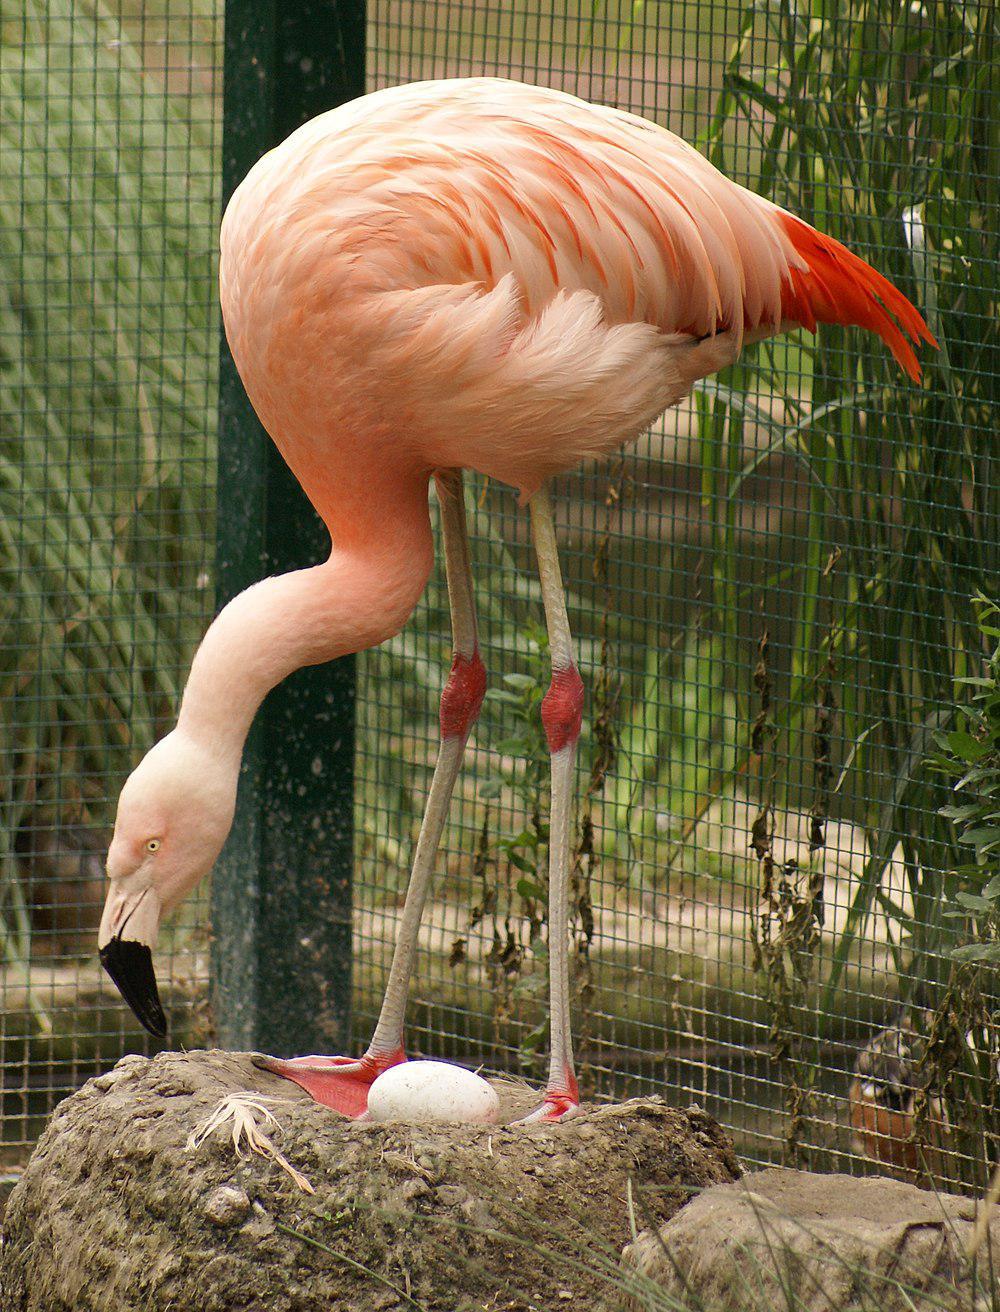 智利红鹳 / Chilean Flamingo / Phoenicopterus chilensis